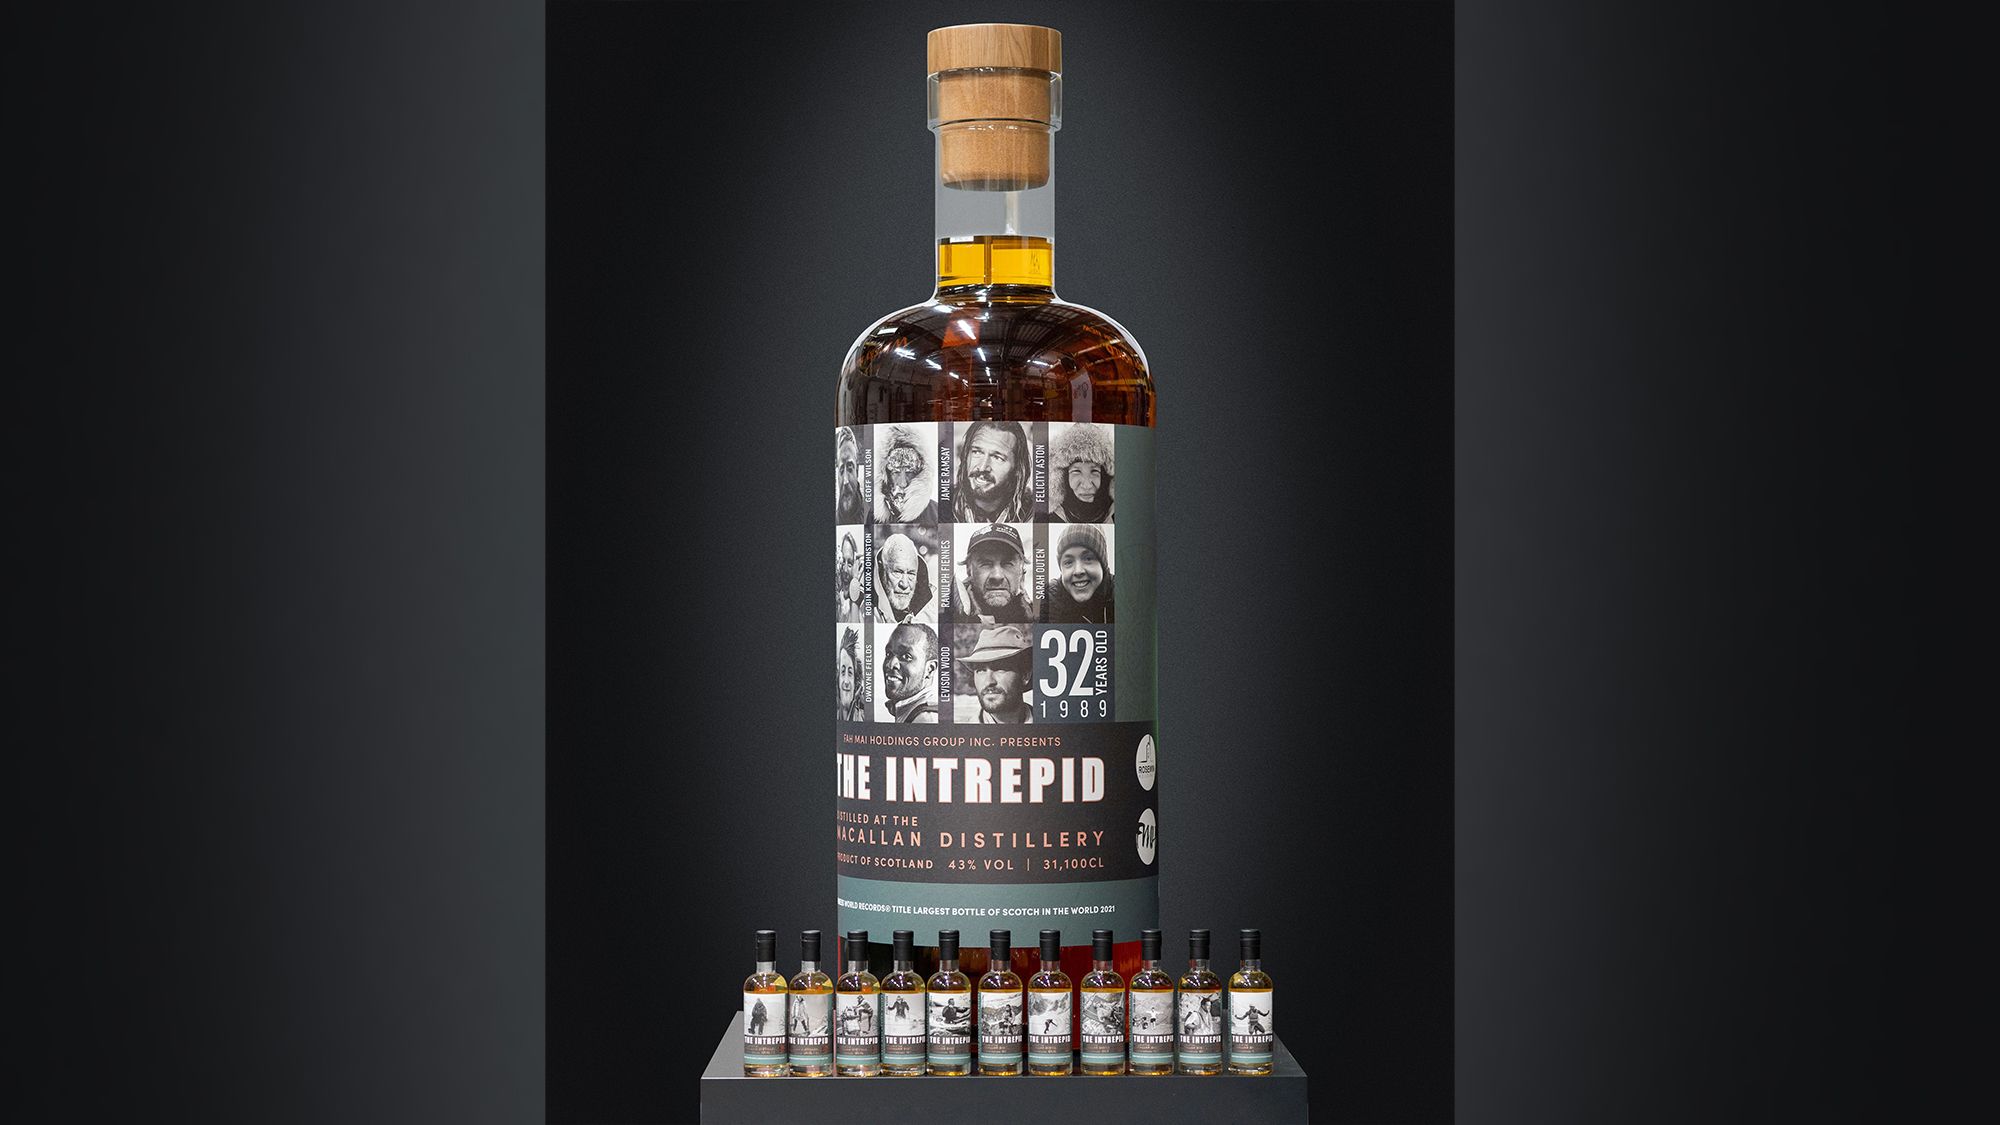 https://media.cnn.com/api/v1/images/stellar/prod/220528090451-01-largest-whiskey-bottle-auction.jpg?c=original